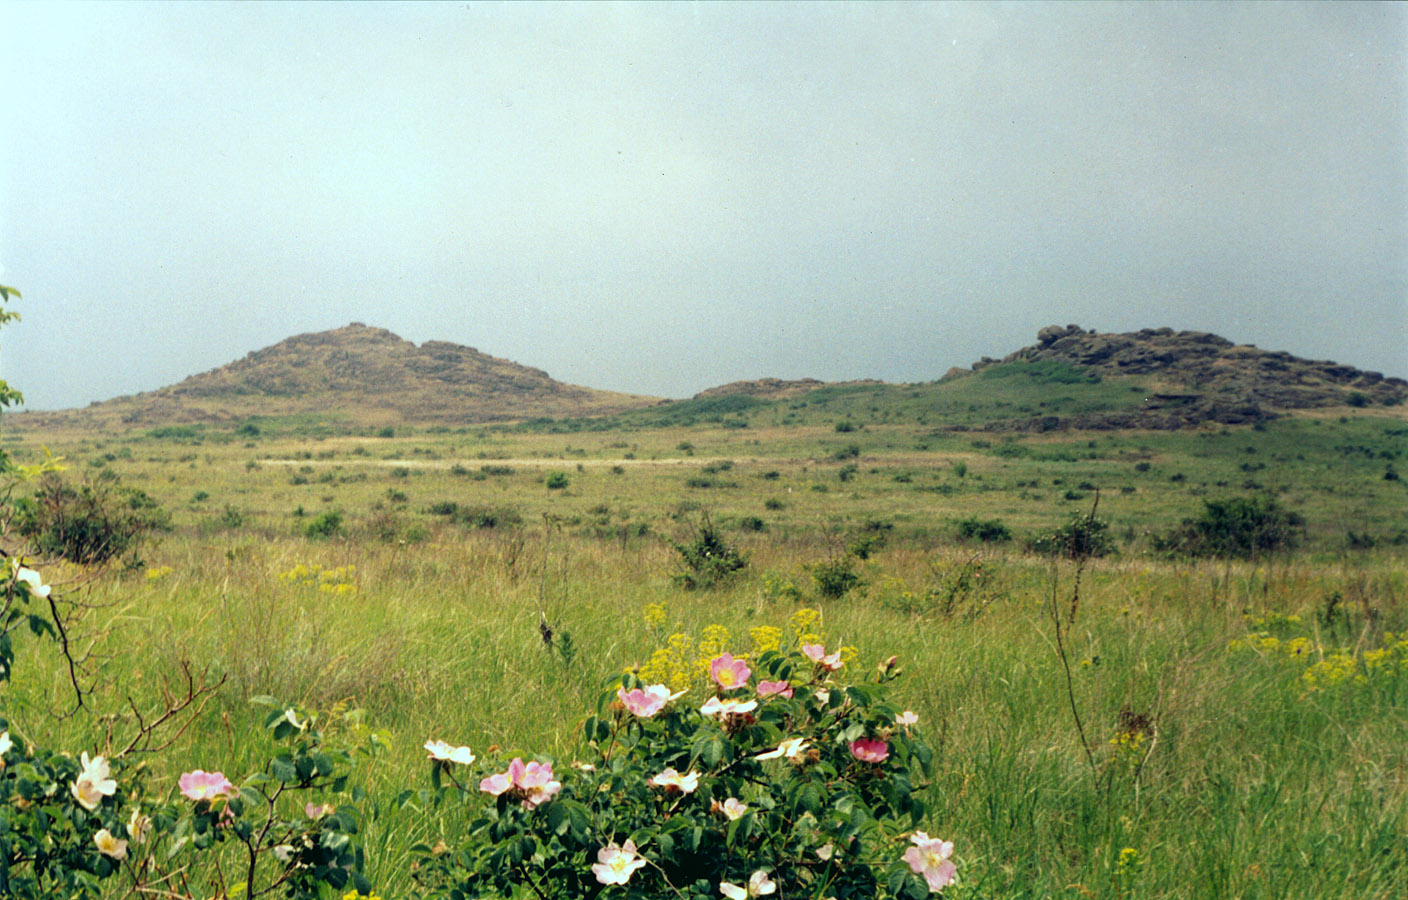 Заповедник "Каменные Могилы", изображение ландшафта.